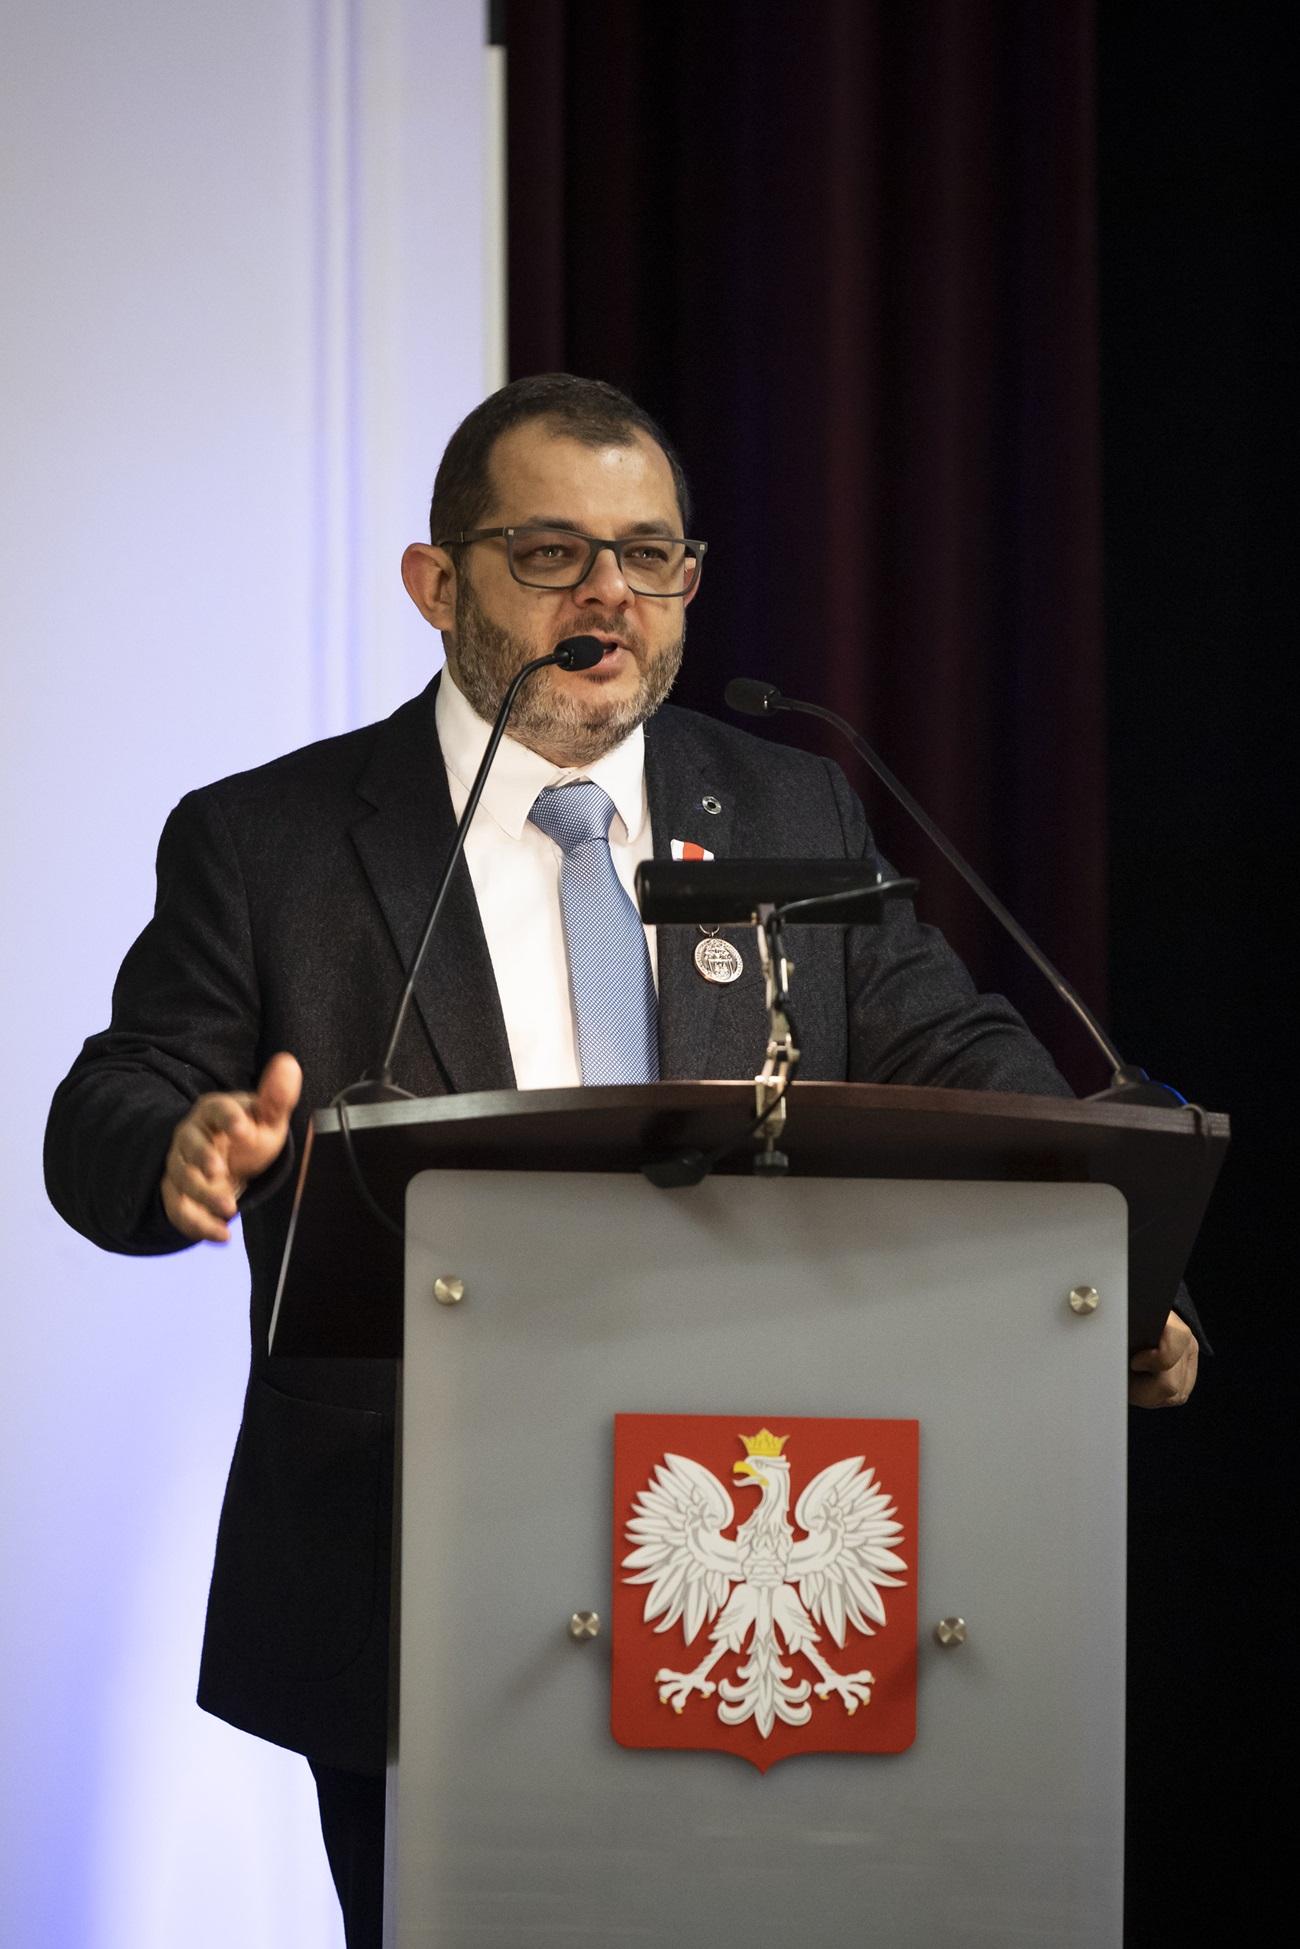 Profesor Tomasz Grzyb stojący przy mównicy. Z przodu mównicy widać logo Polski.